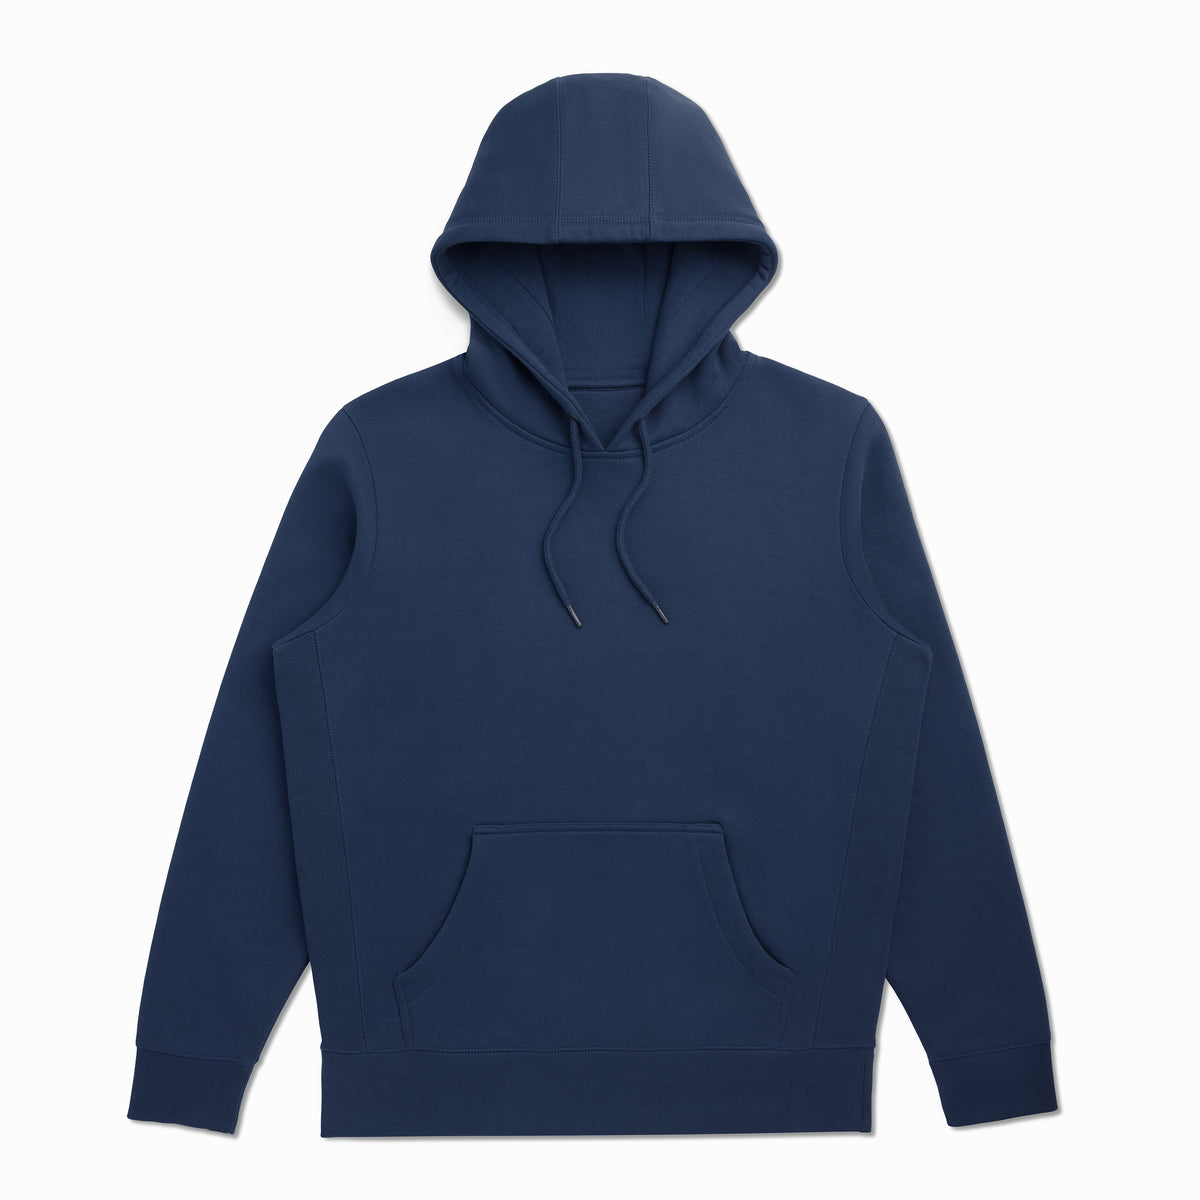 Soft & Cozy 100% Cotton Fleece Zip Hoodie with Inner Pockets | Dark Navy